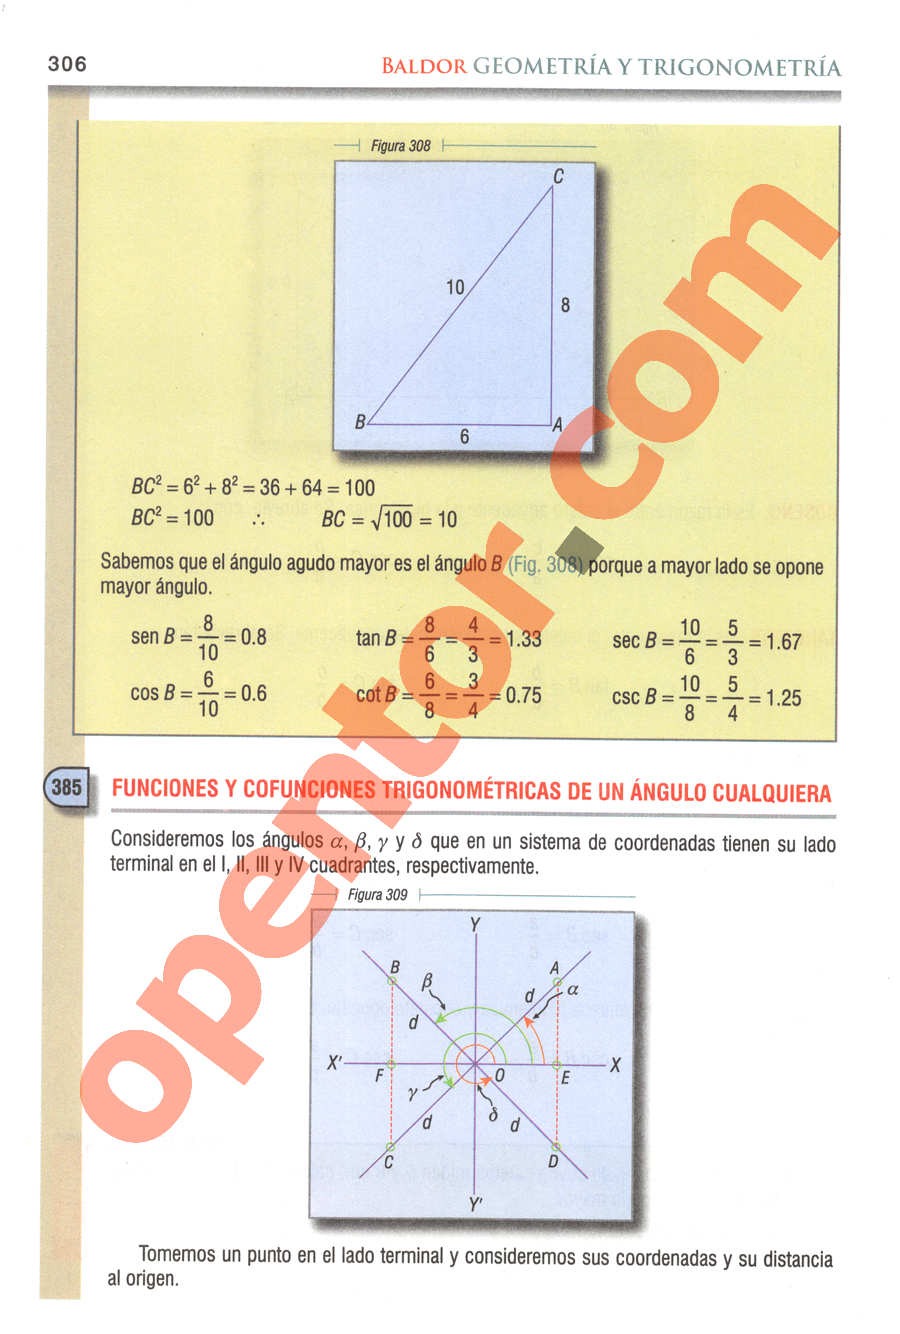 Geometría y Trigonometría de Baldor - Página 306